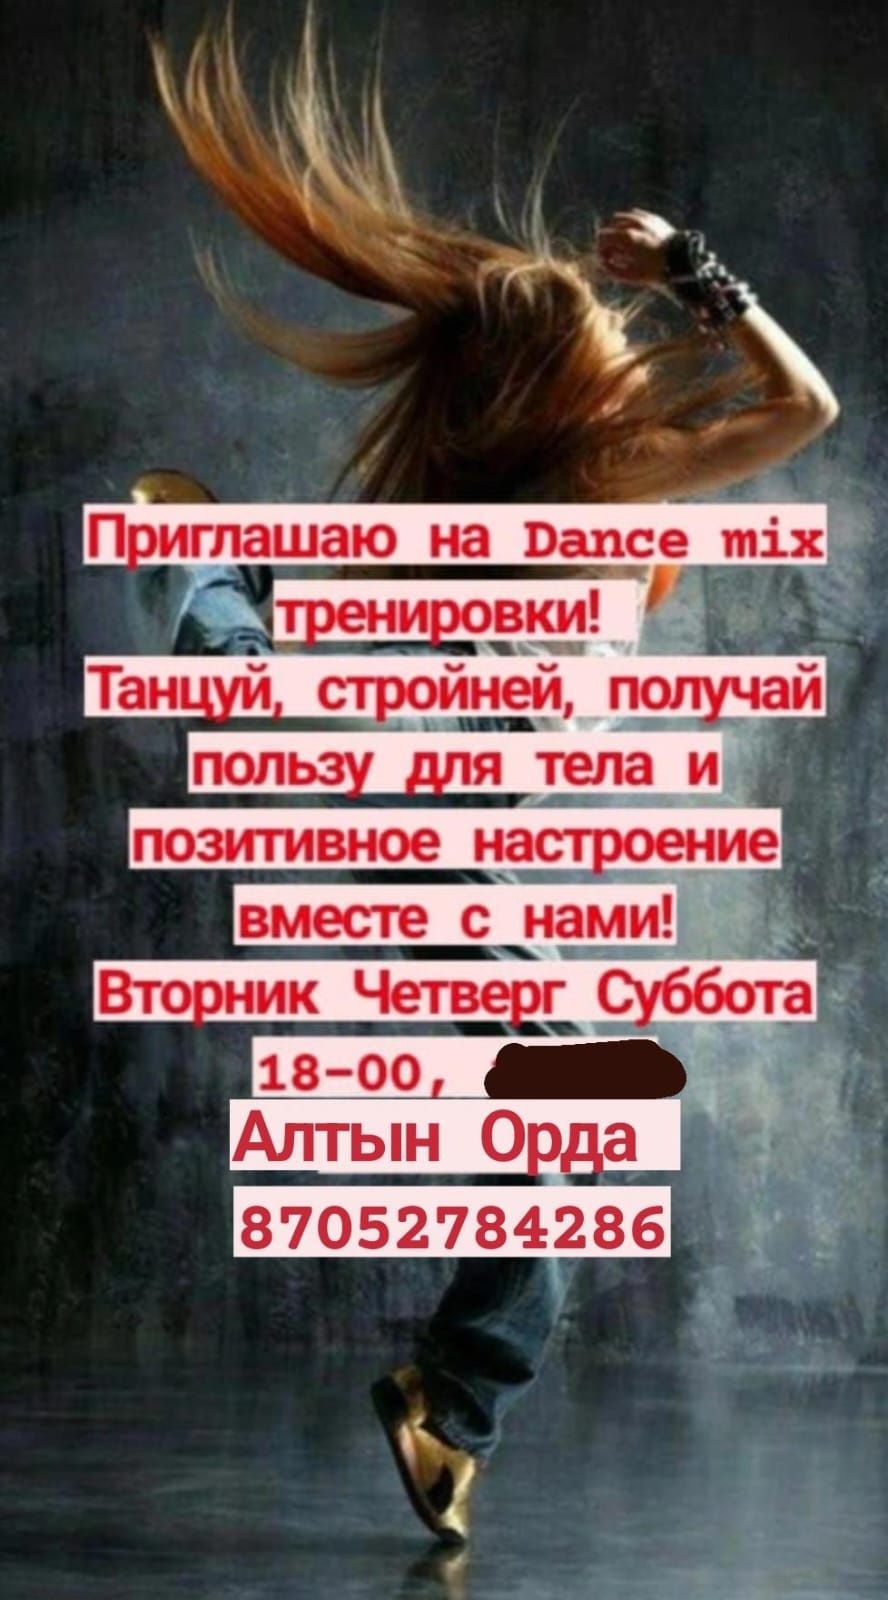 Dance mix танцы тренировки